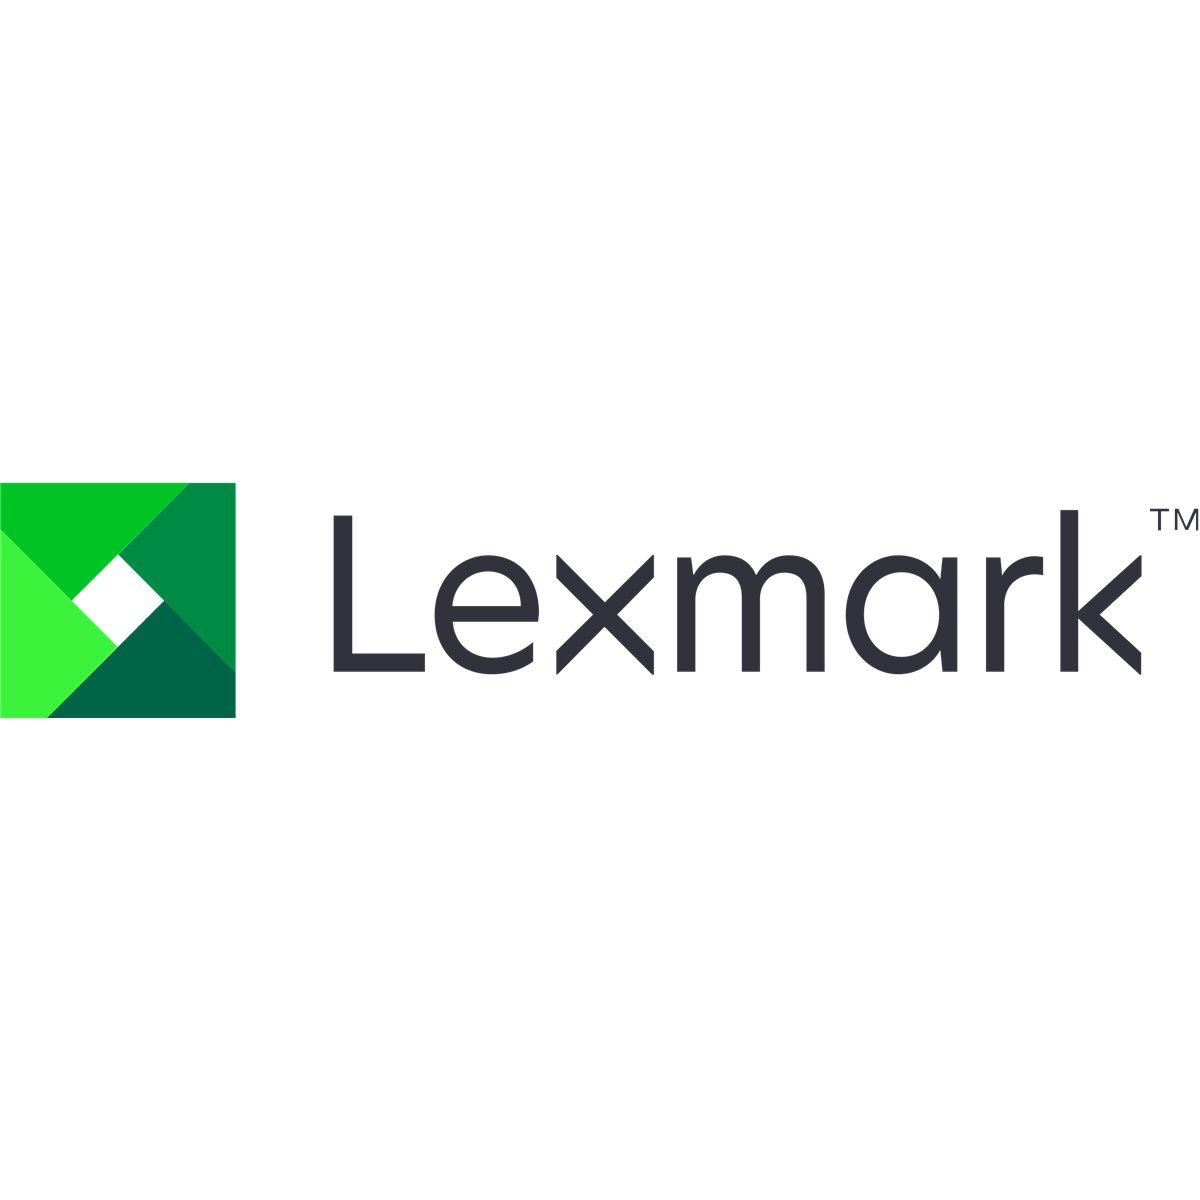 Lexmark OPTRA S1250/1255/1650/1855/2450/2455 PAPIERZUFHRUNG 2000 BLATT - 2,000 sheet